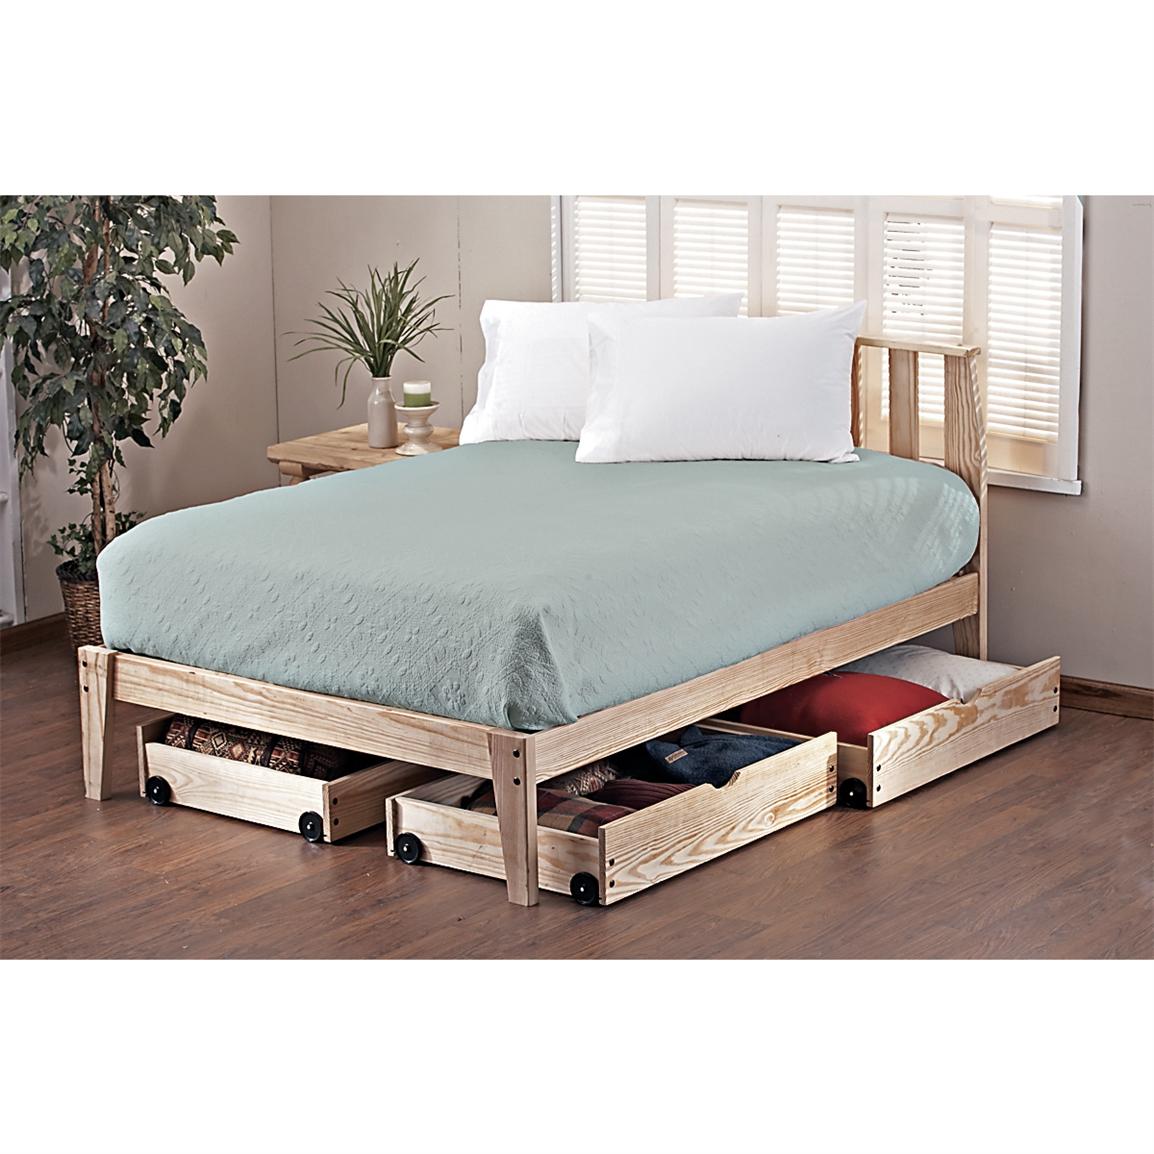 Pine Rock Platform Twin Bed Frame - 113111, Bedroom Sets ...